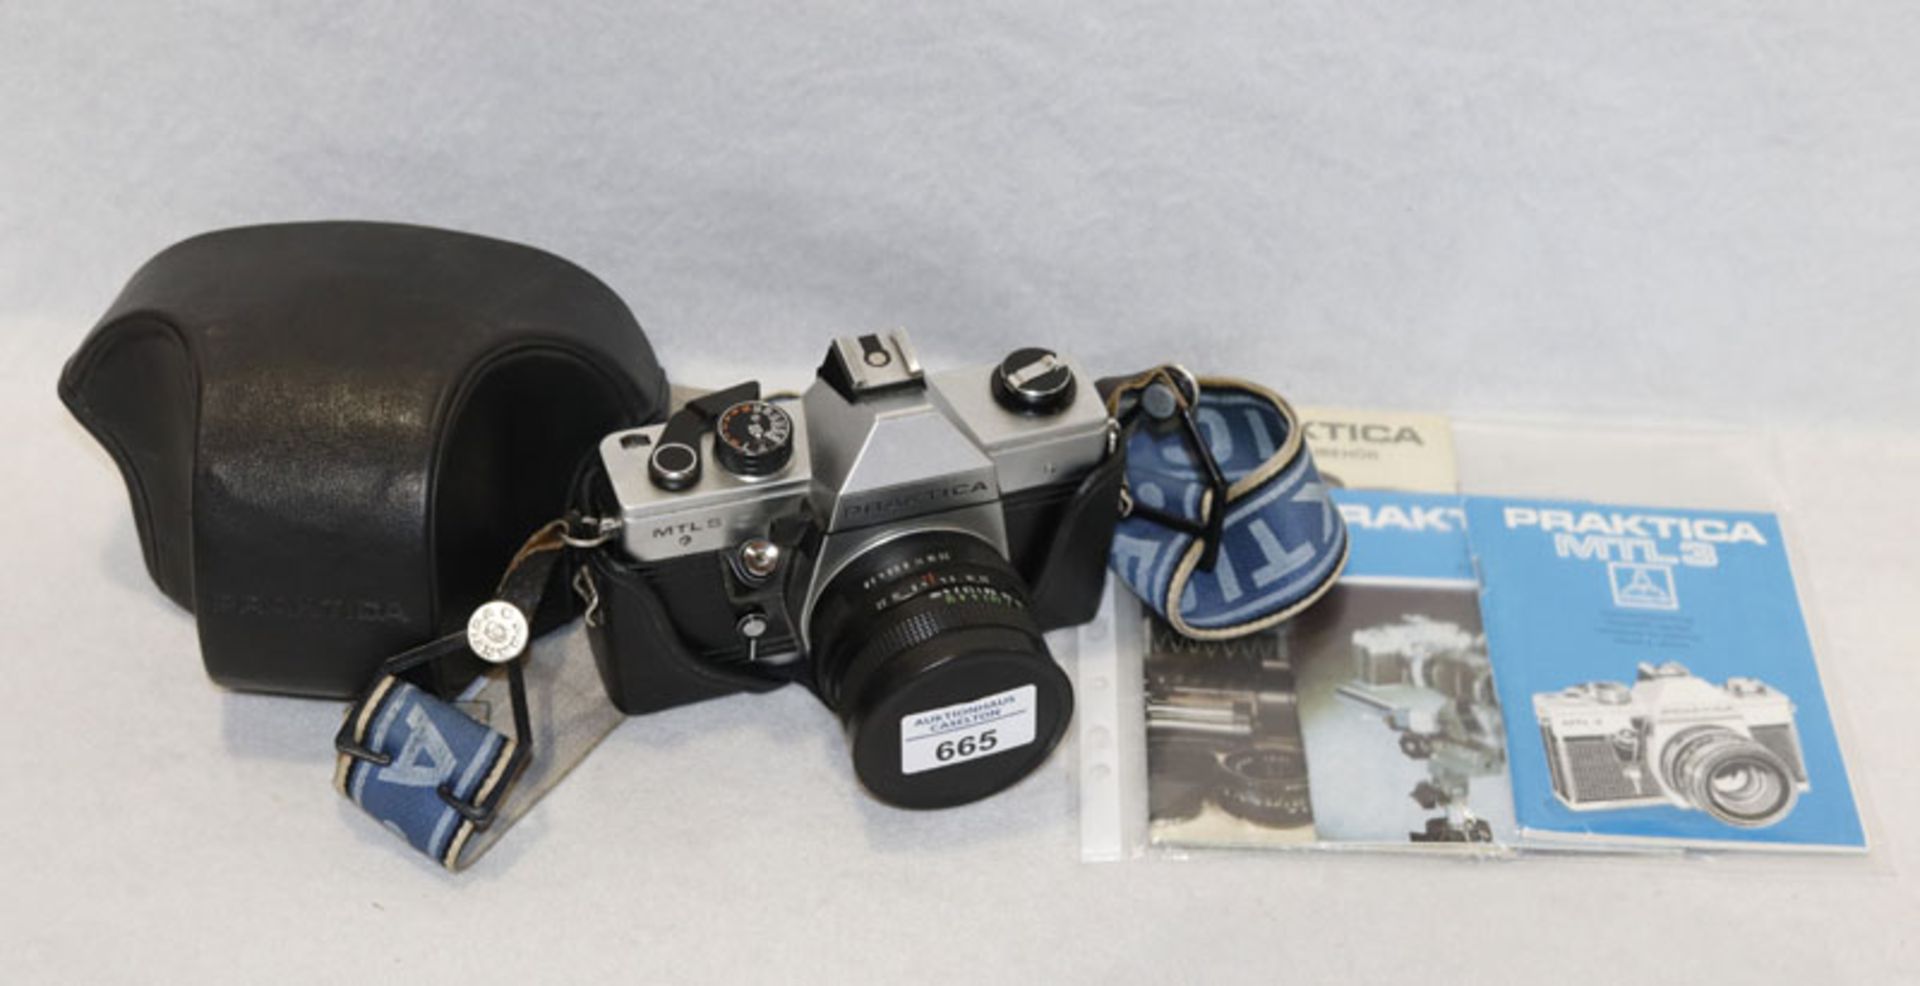 Fotokamera Praktica MTL 5 mit Tasche und Beschreibung, Gebrauchsspuren